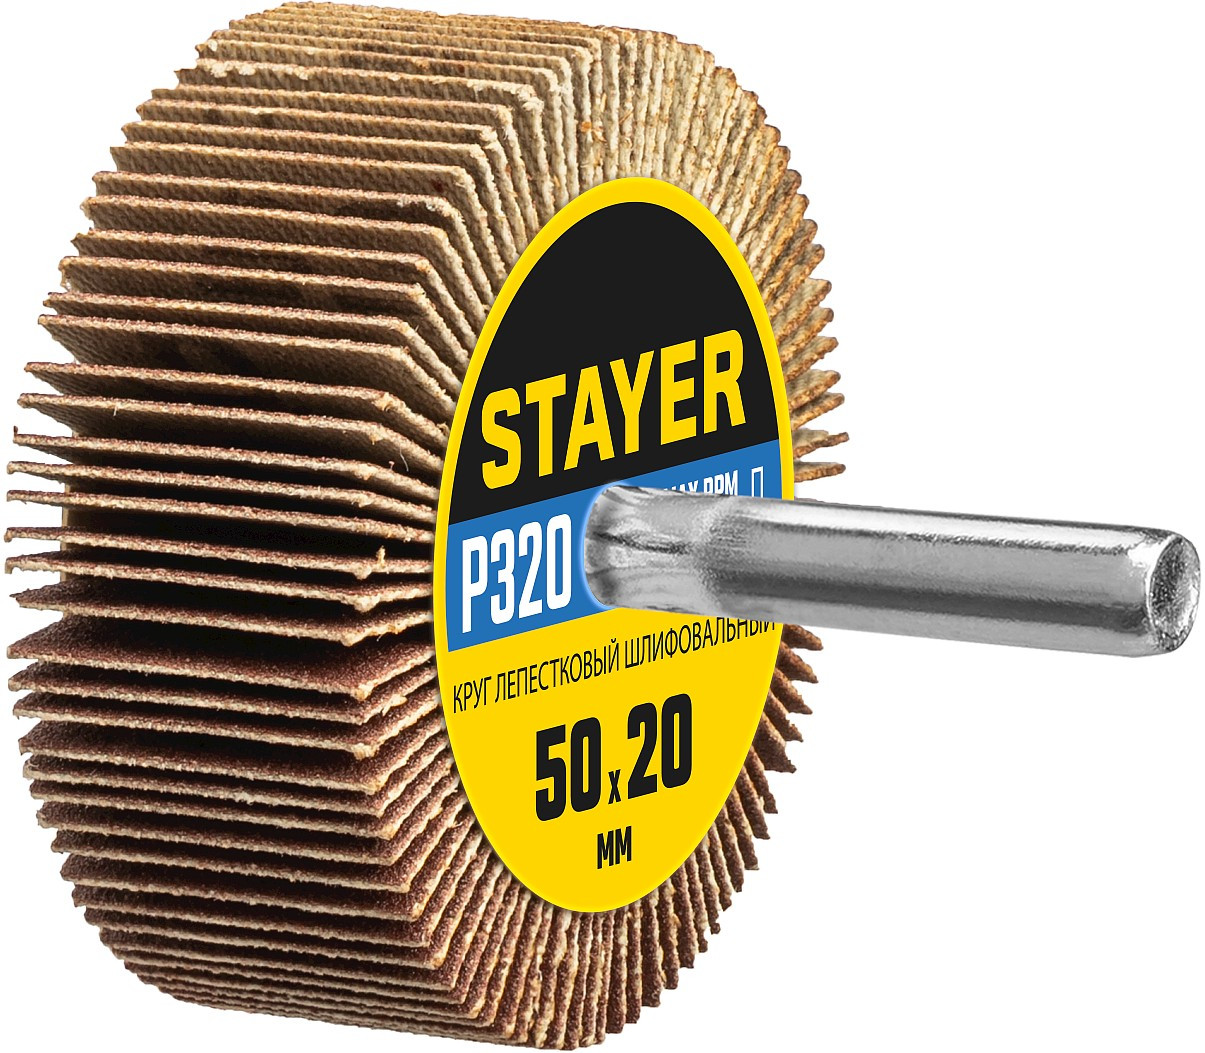 STAYER P320, 50х20 мм, круг шлифовальный лепестковый на шпильке 36607-320